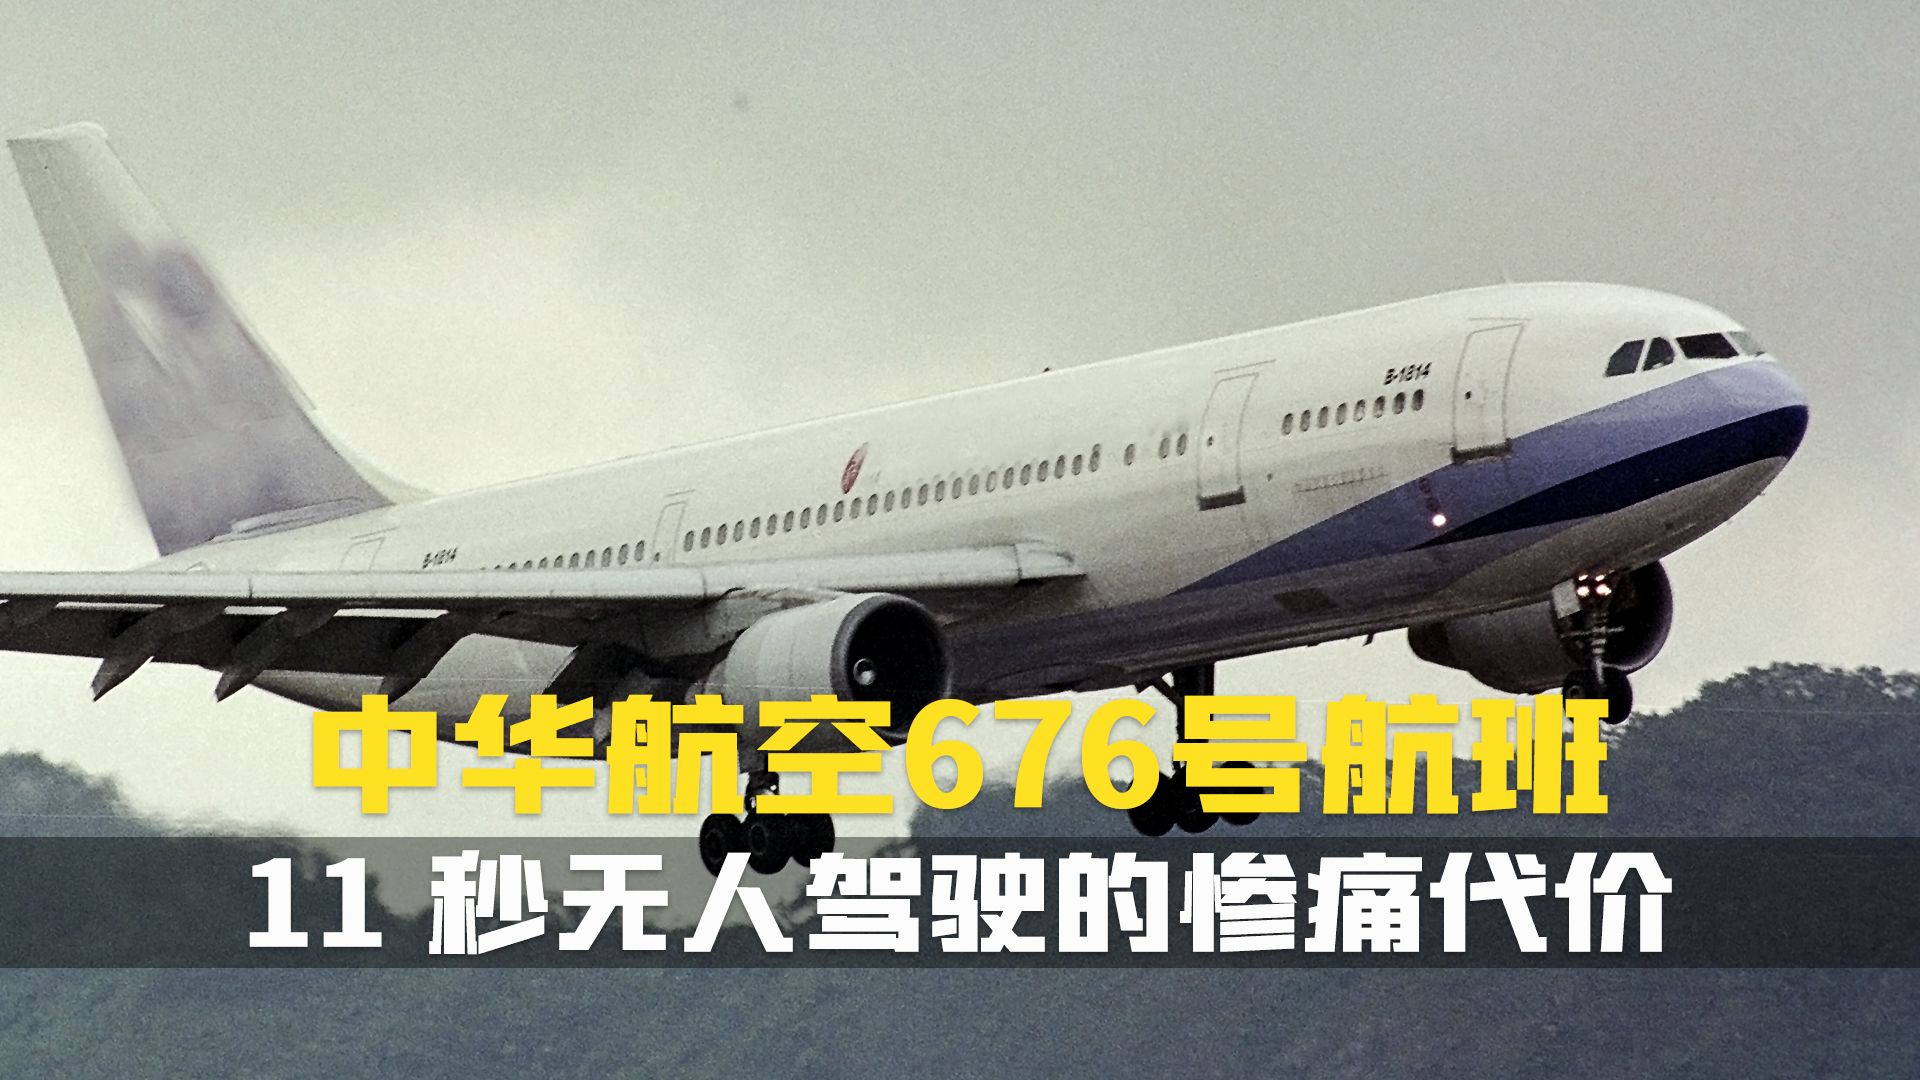 中华航空605号空难图片